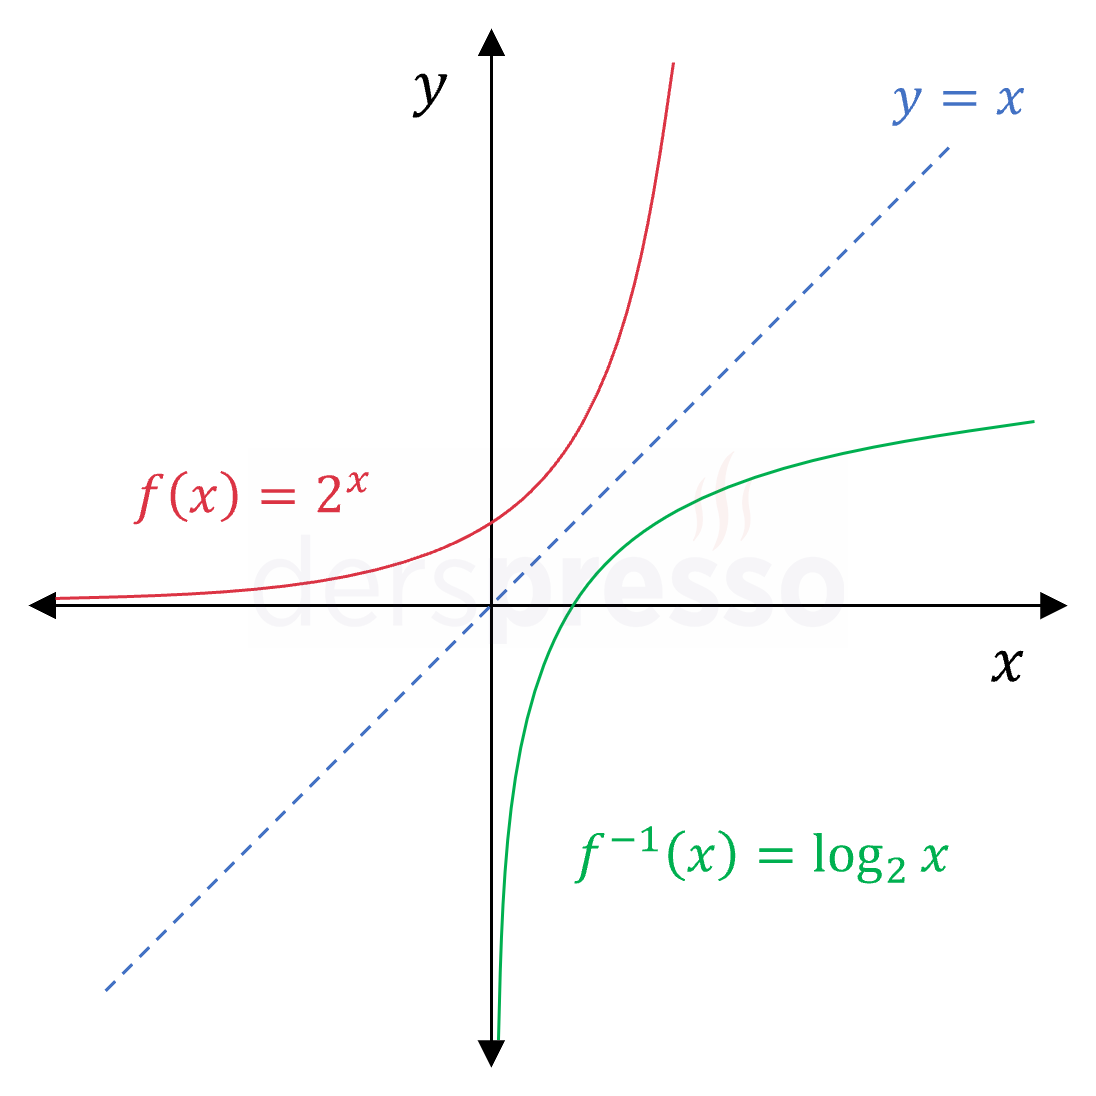 Üstel fonksiyon ve tersinin grafikleri